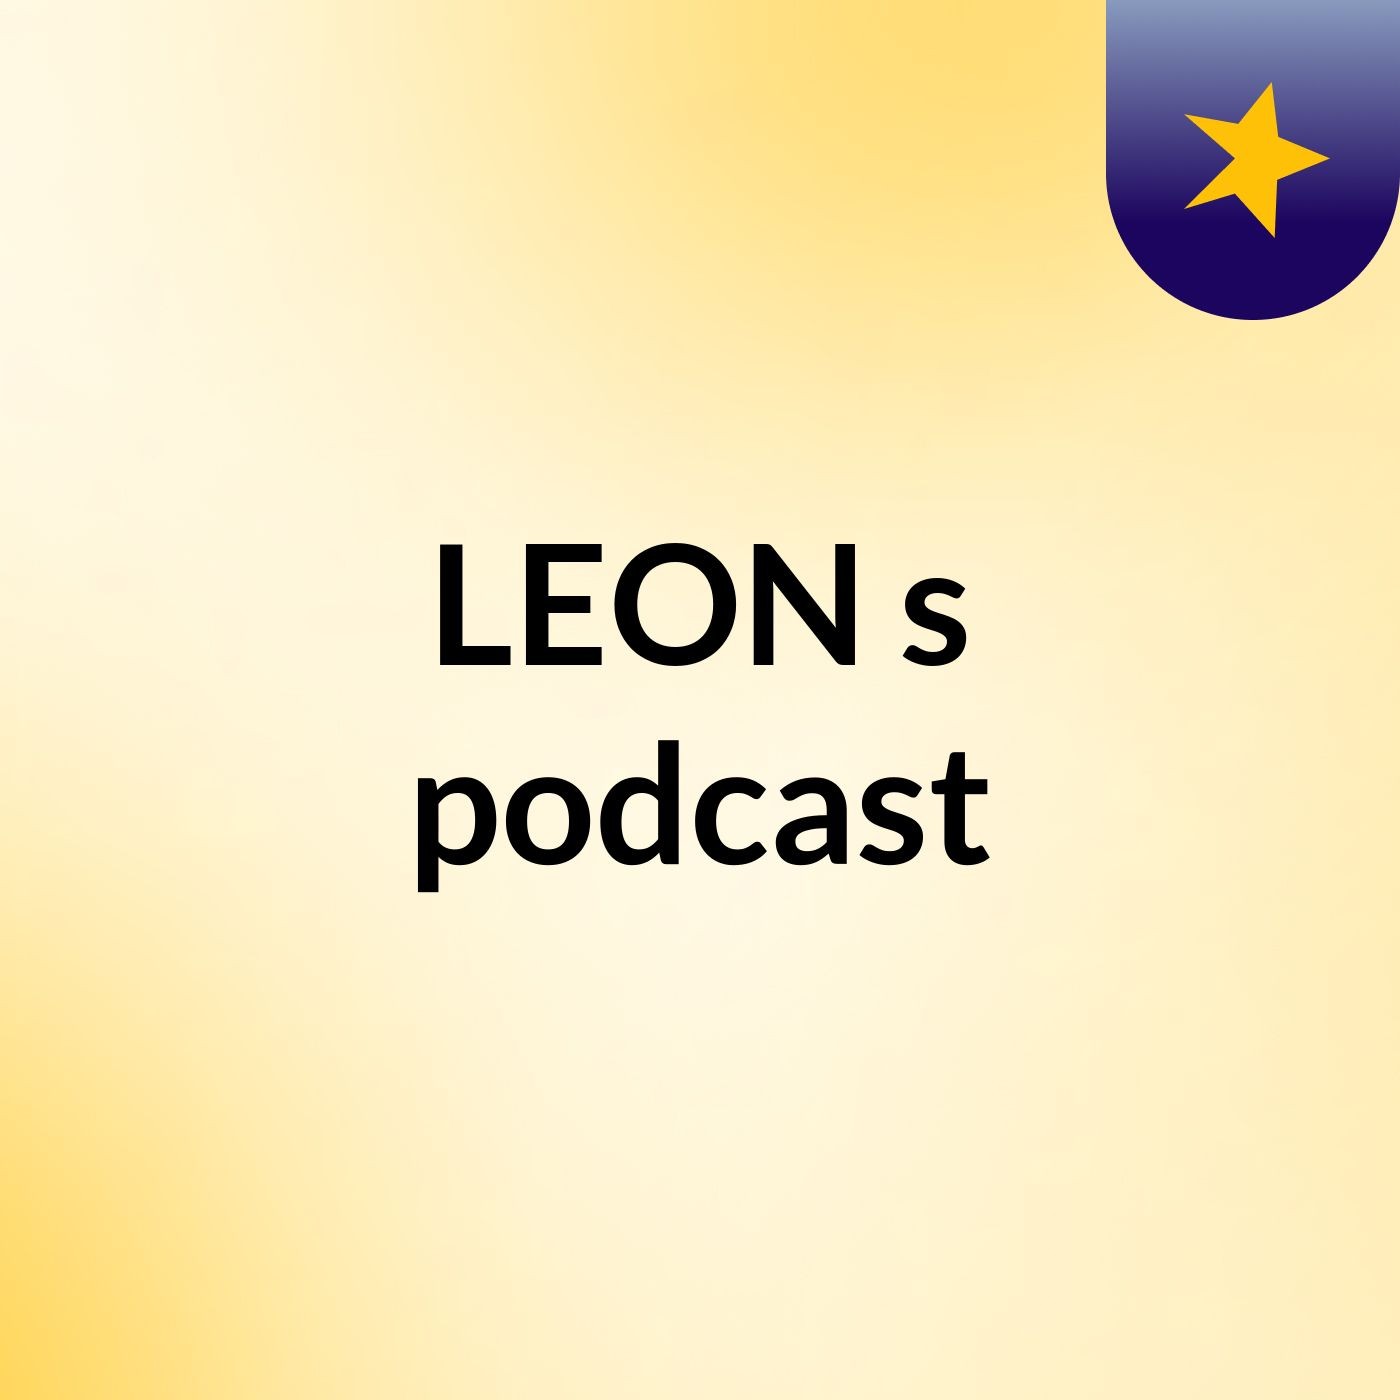 LEON's podcast